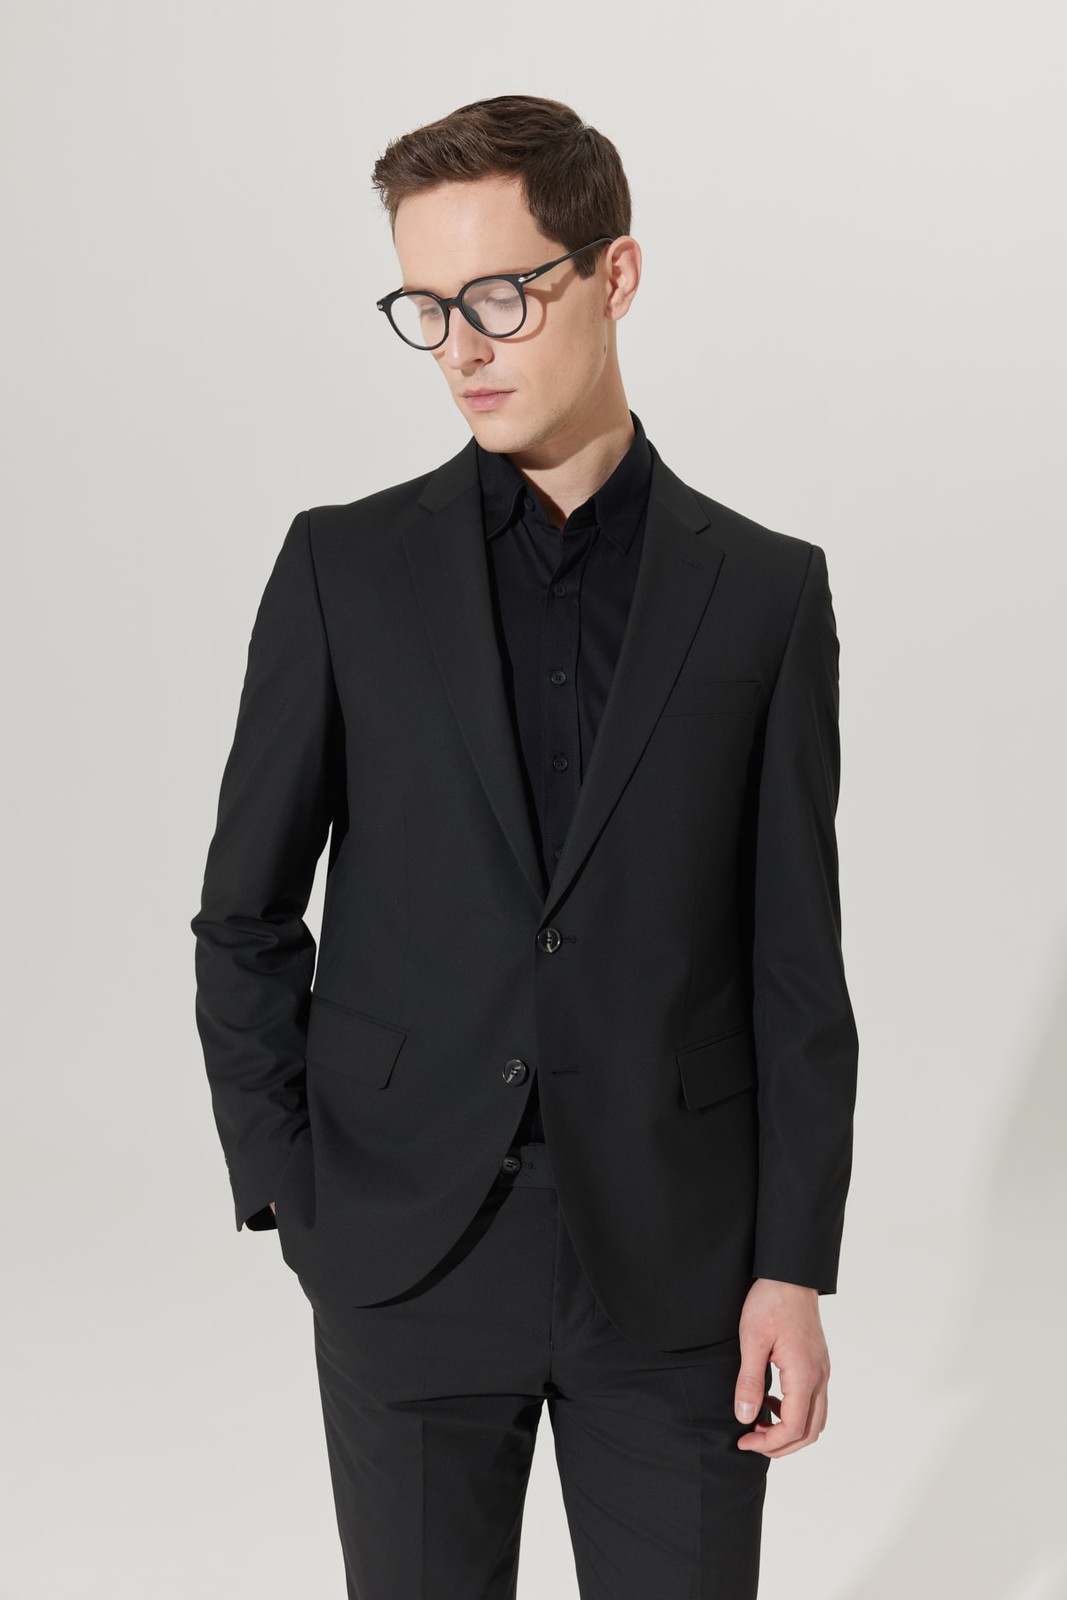 ALTINYILDIZ CLASSICS Men's Black Regular Fit Comfortable Cut Black Suit